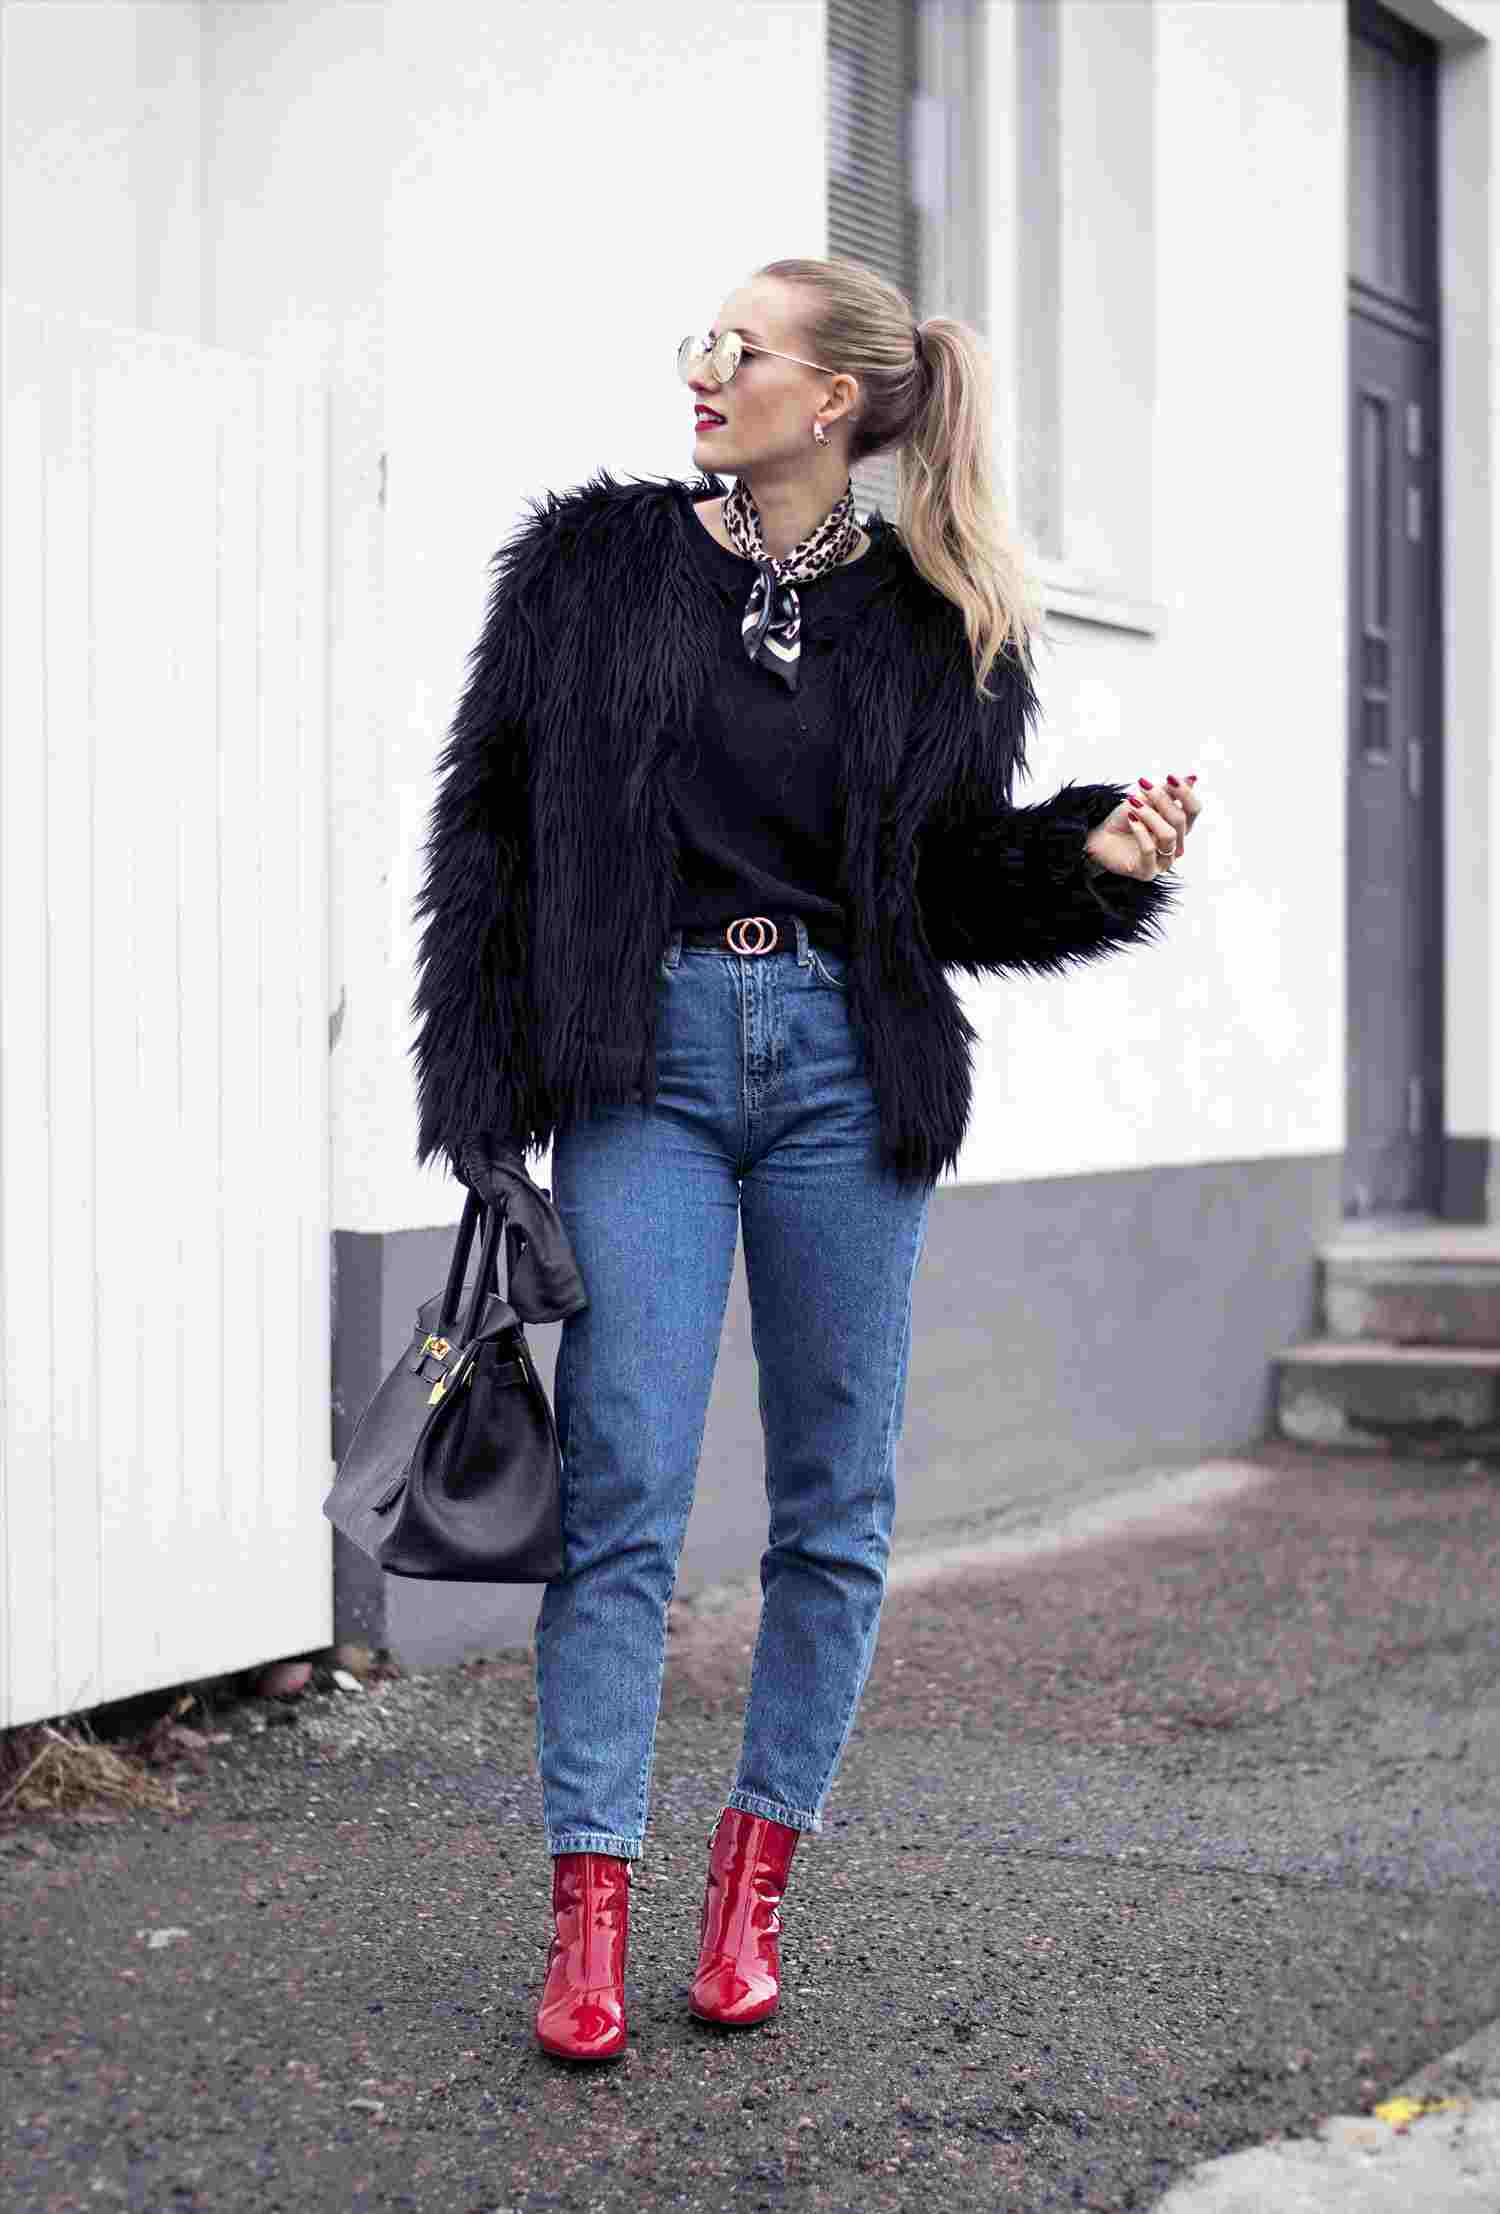 Os jeans da mamãe combinam casaco de pele botins vermelhos, tendências da moda inverno 2019